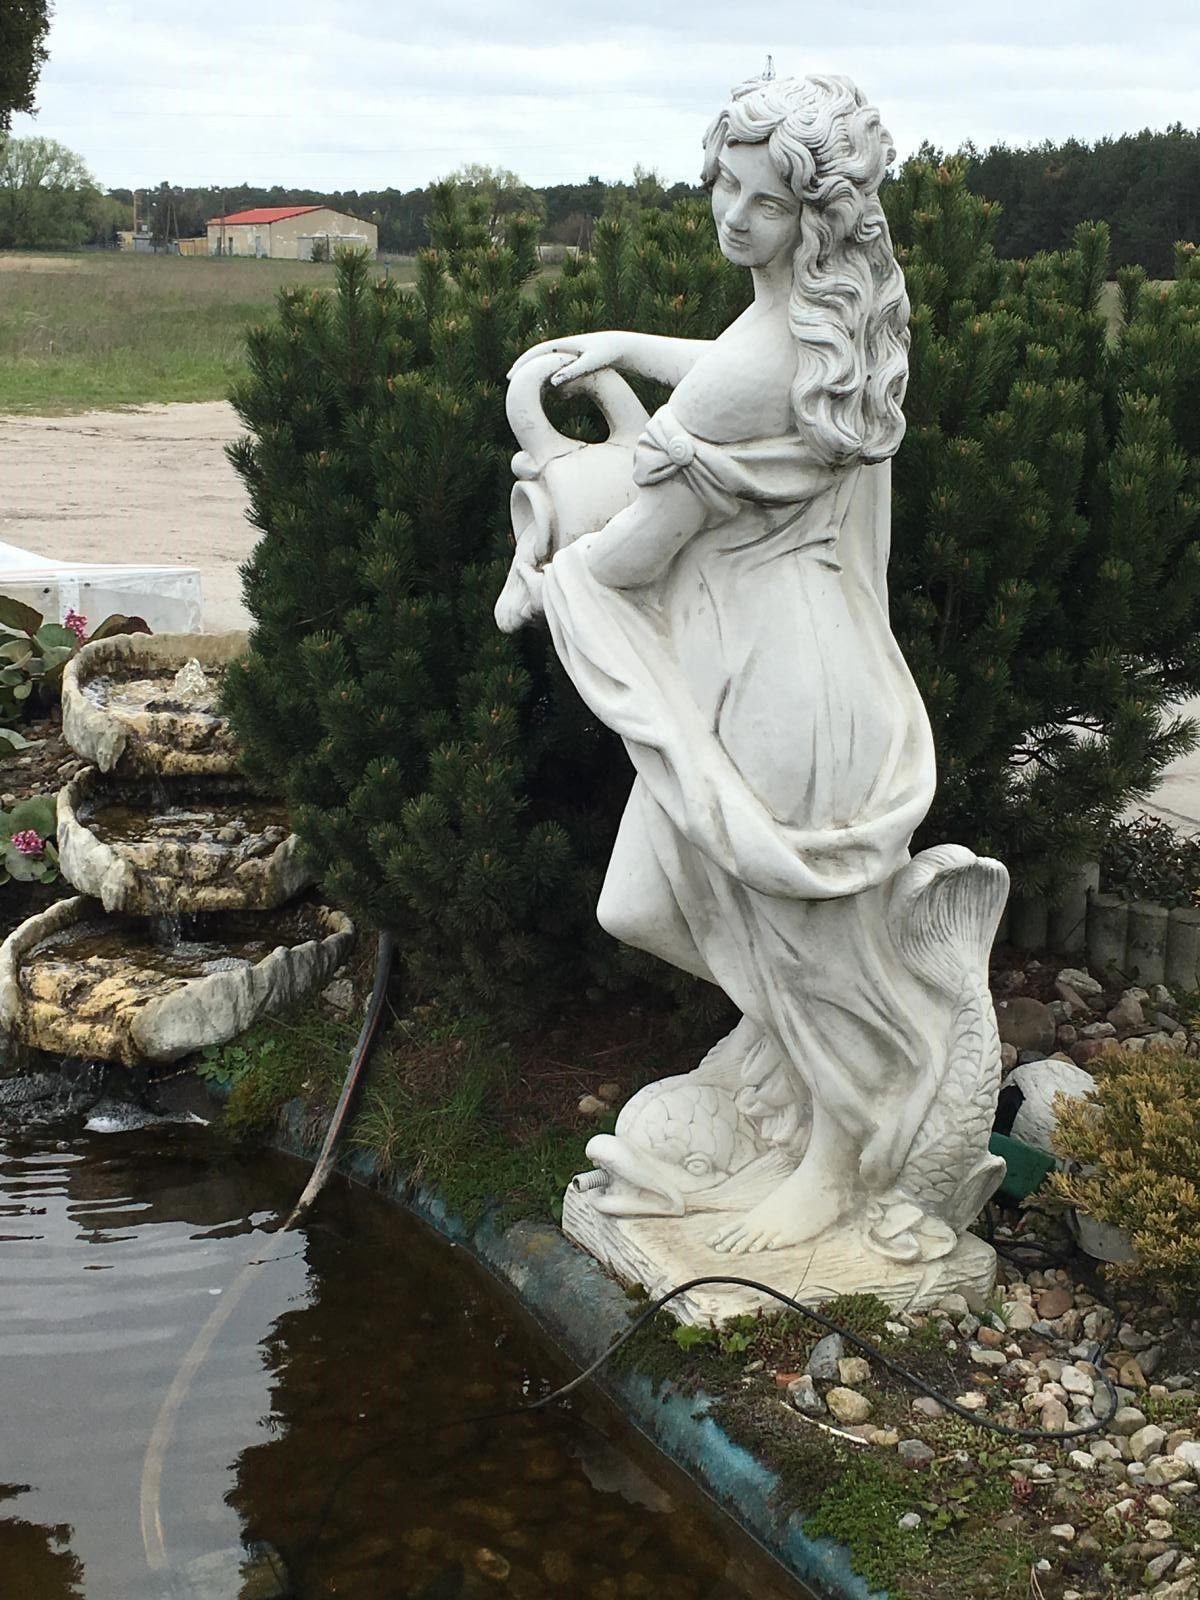 Teichfontäne Gartenfigur Skulptur Wohndesign Antikes Gartenfigur Fontänenfigur Griechische Tierfigug